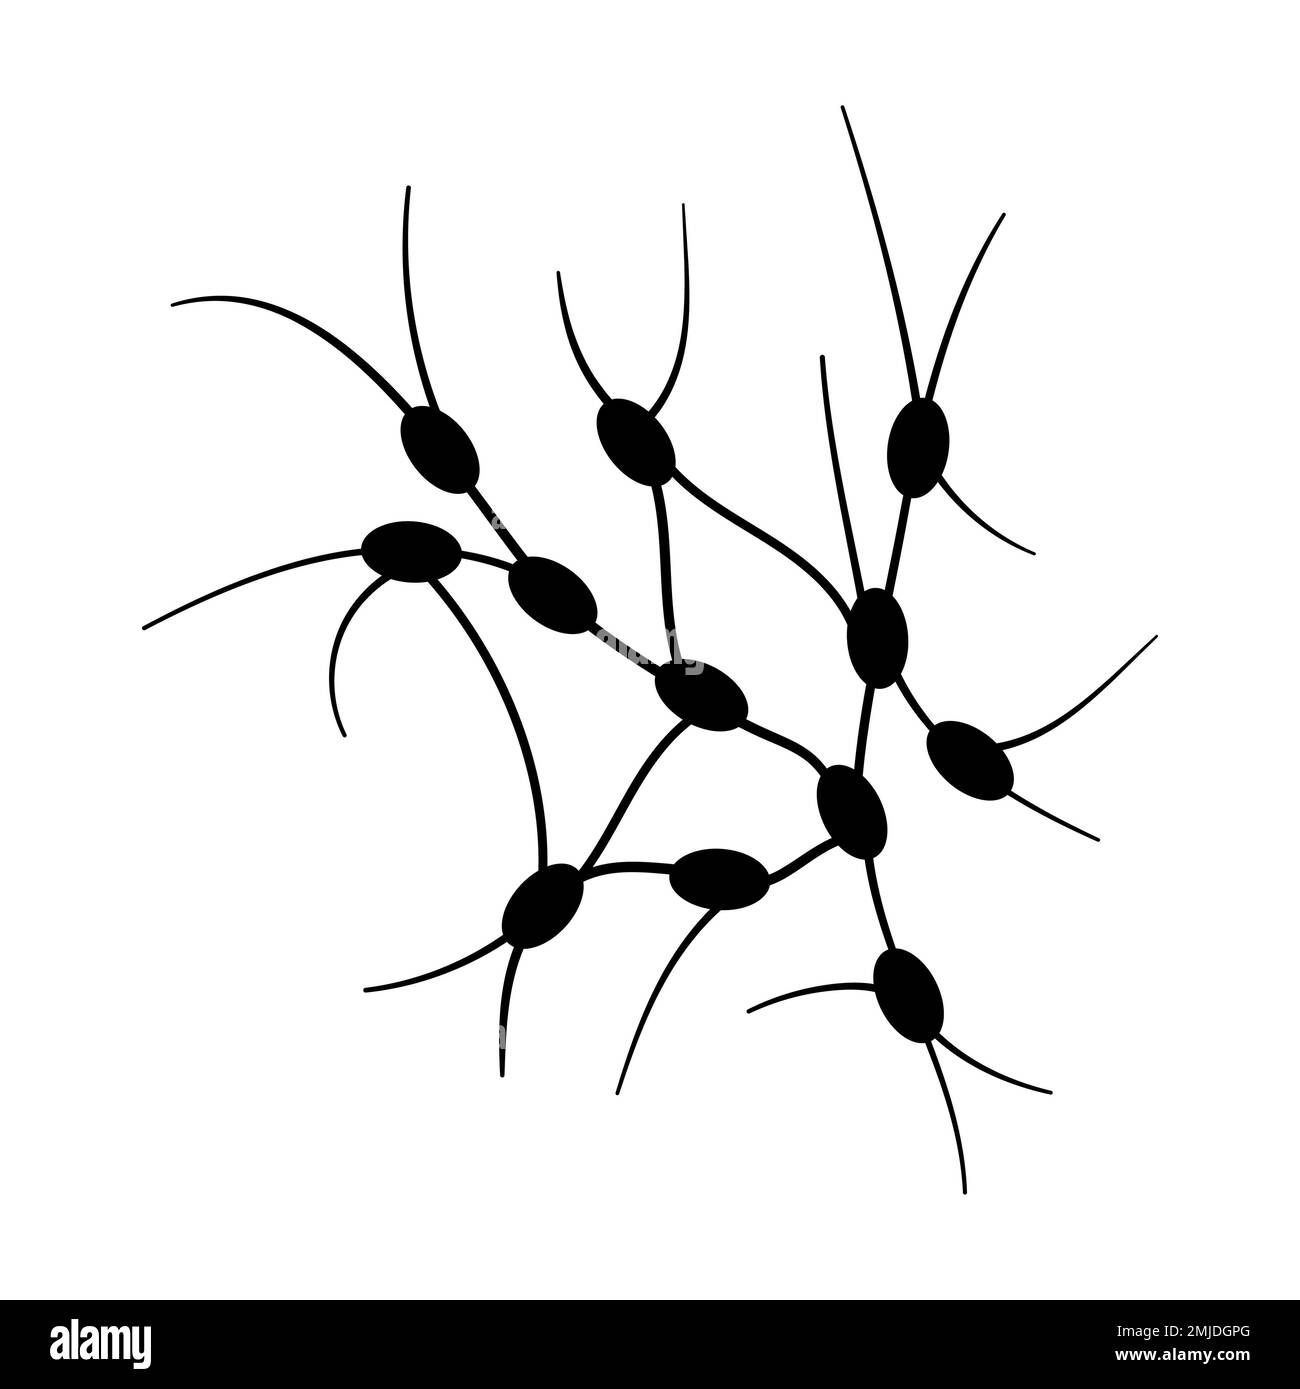 Ganglions lymphatiques, illustration conceptuelle Banque D'Images